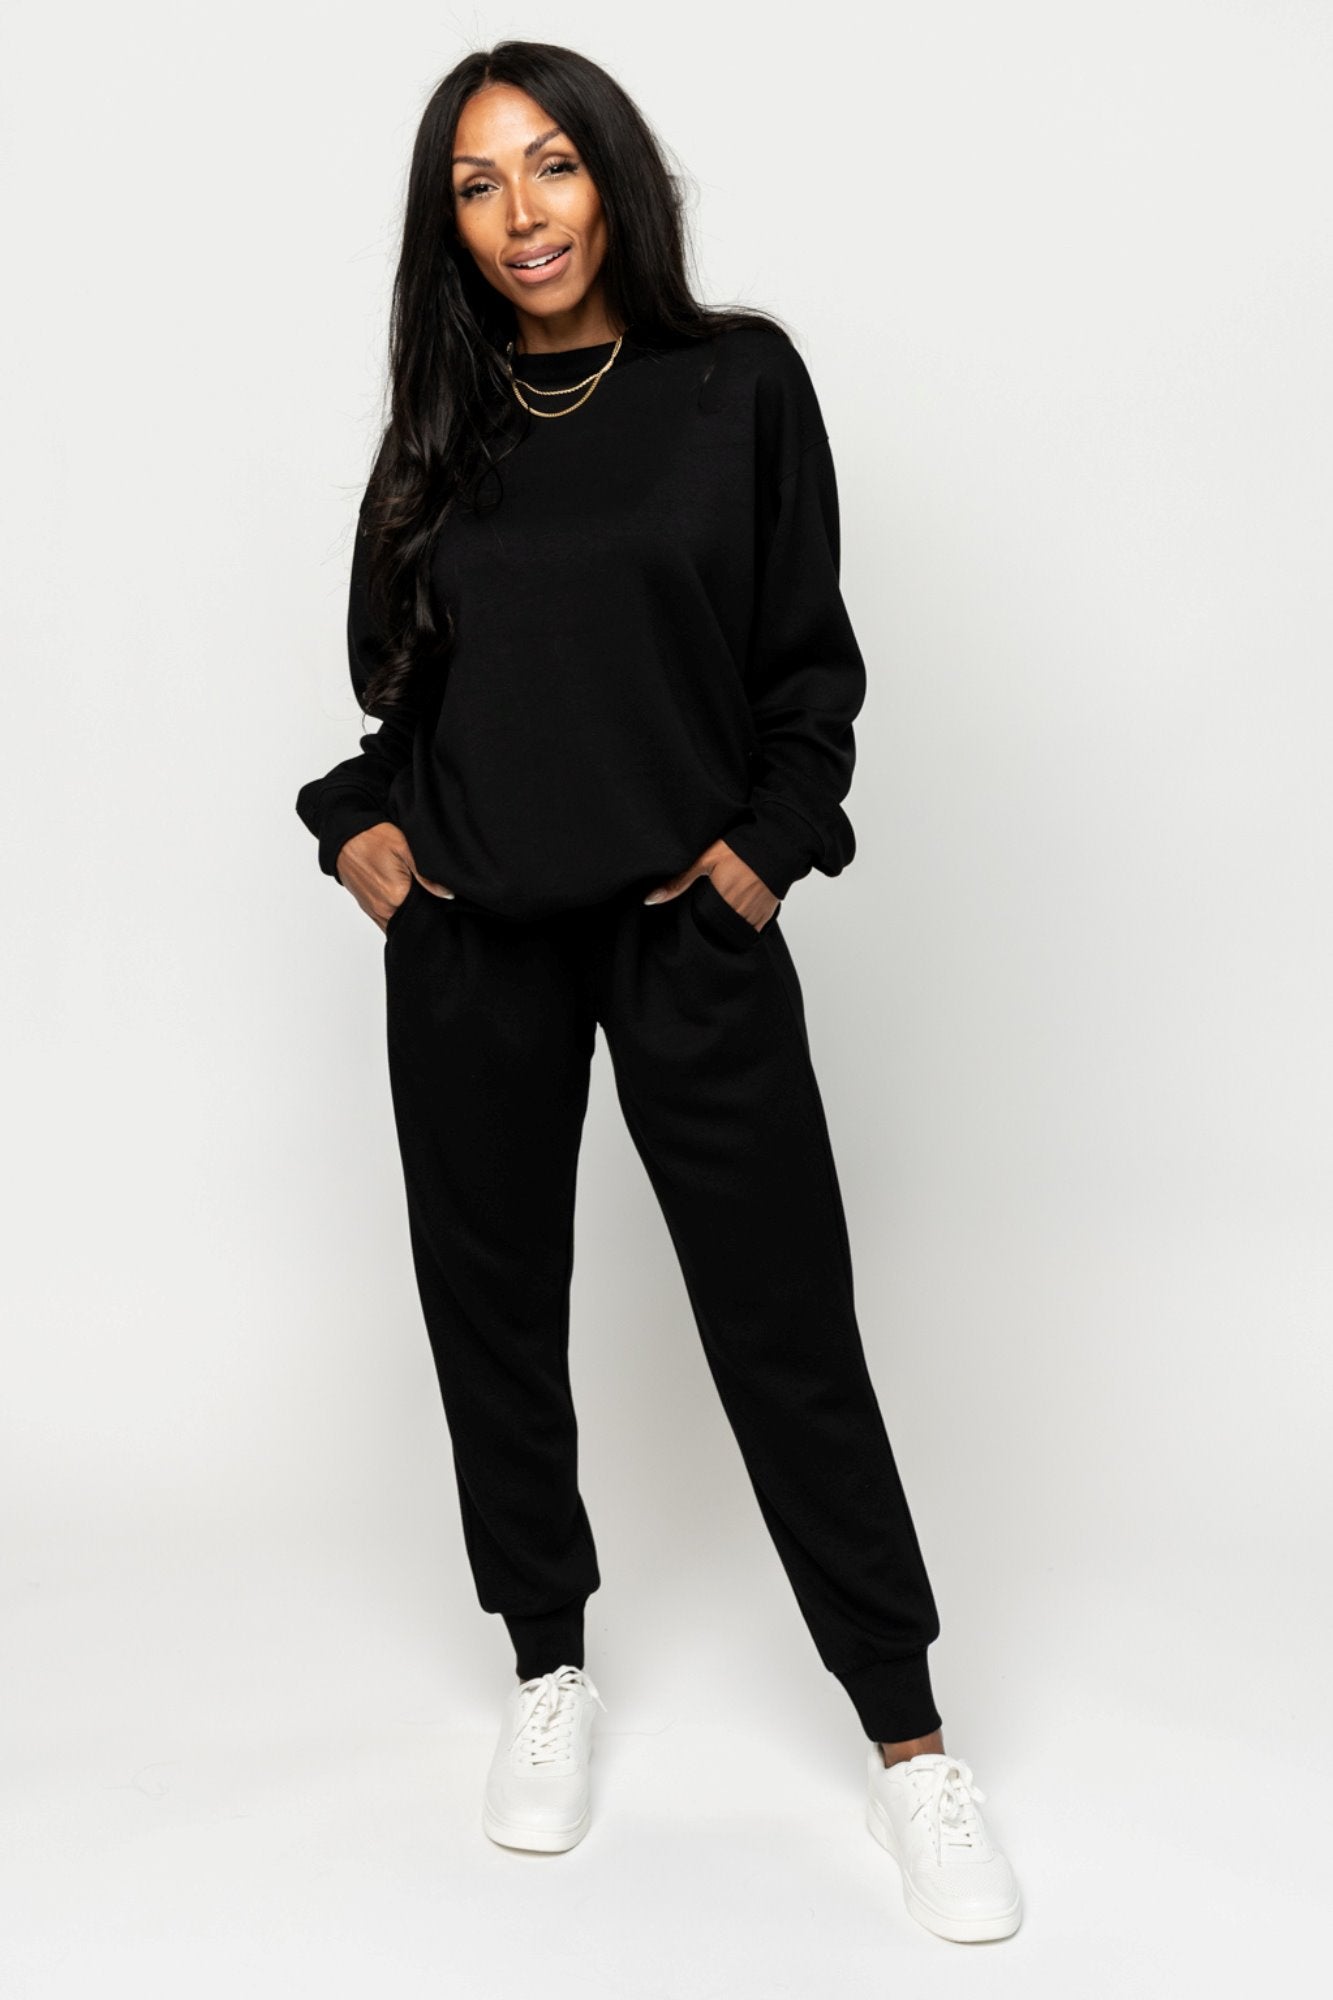 Black Jersey Jogger Pants by Bobi - Miss Monroe Boutique